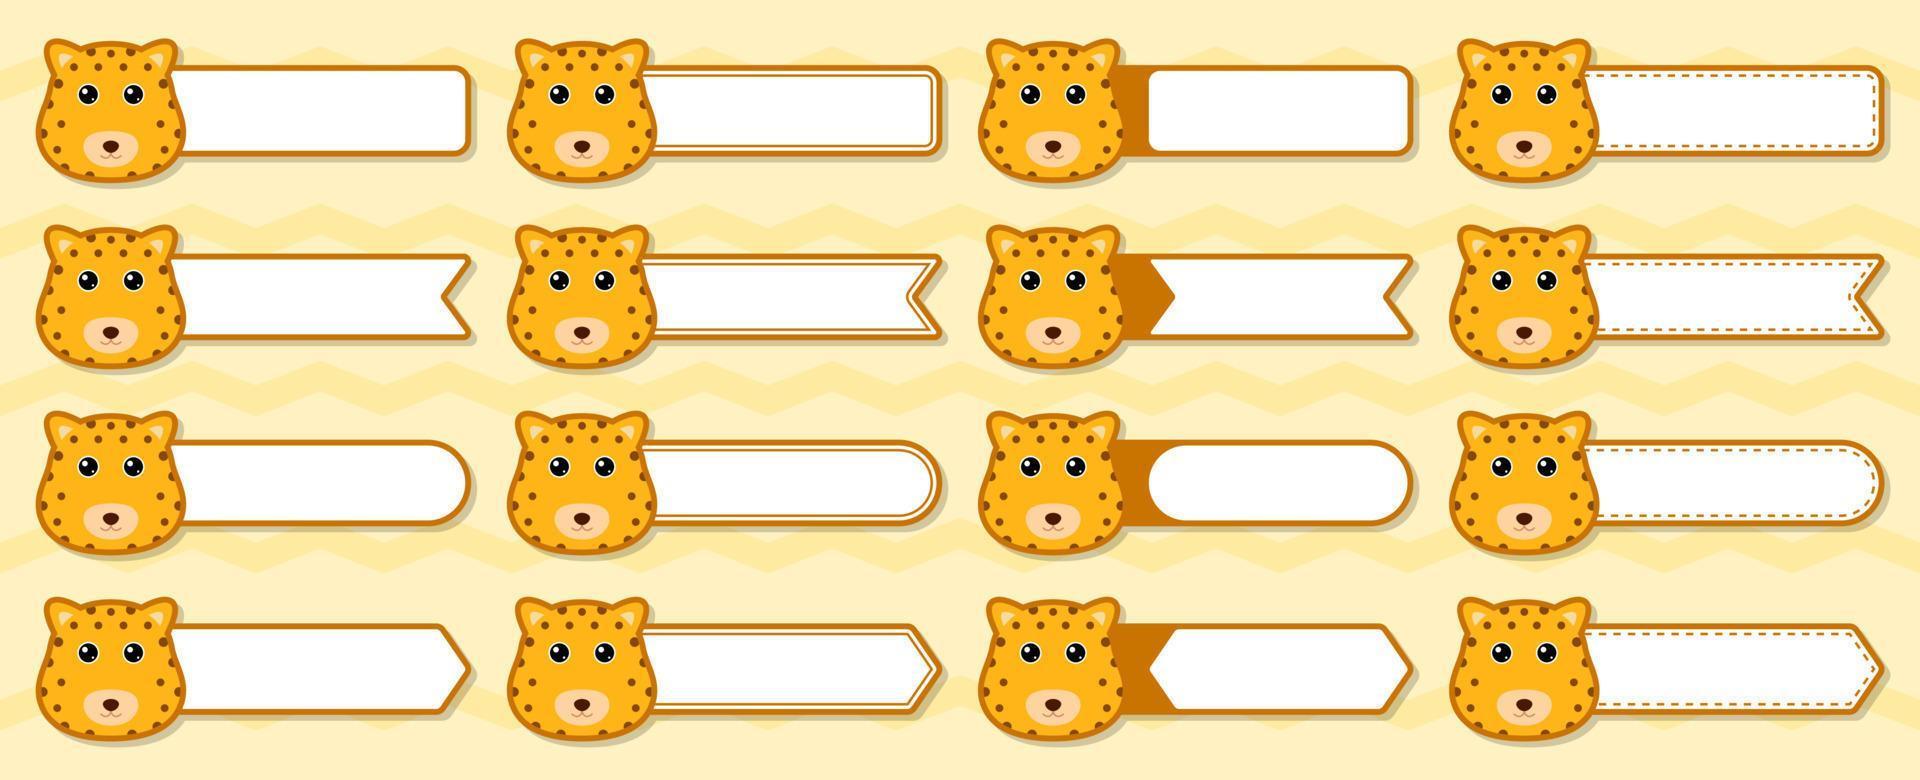 notitie sticker set met luipaard vector